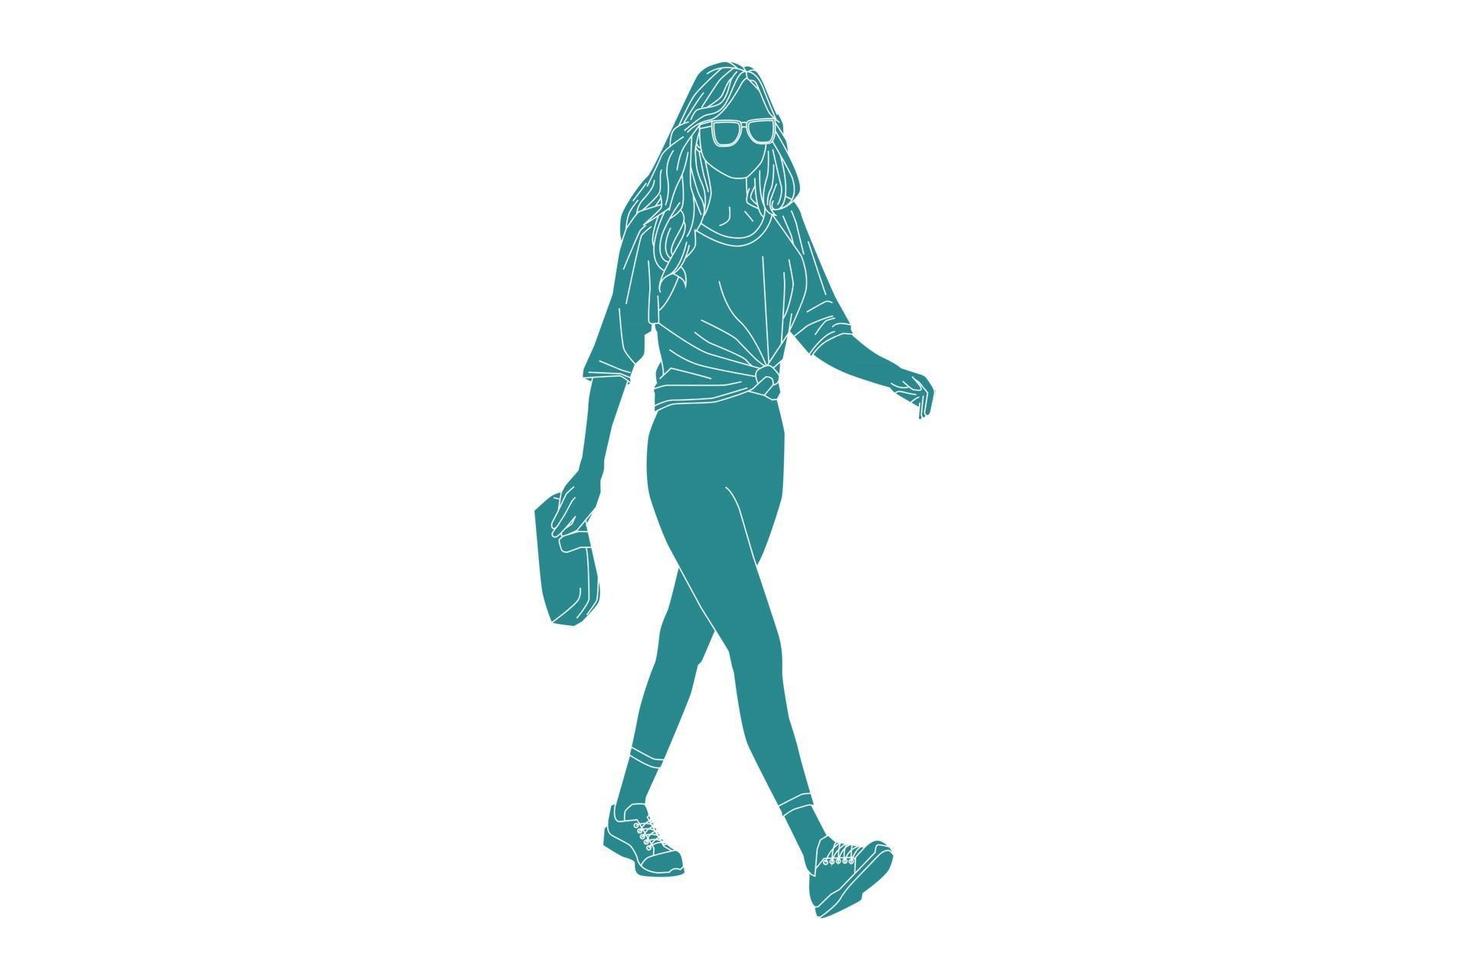 ilustração em vetor de mulher casual na estrada lateral, estilo simples com contorno